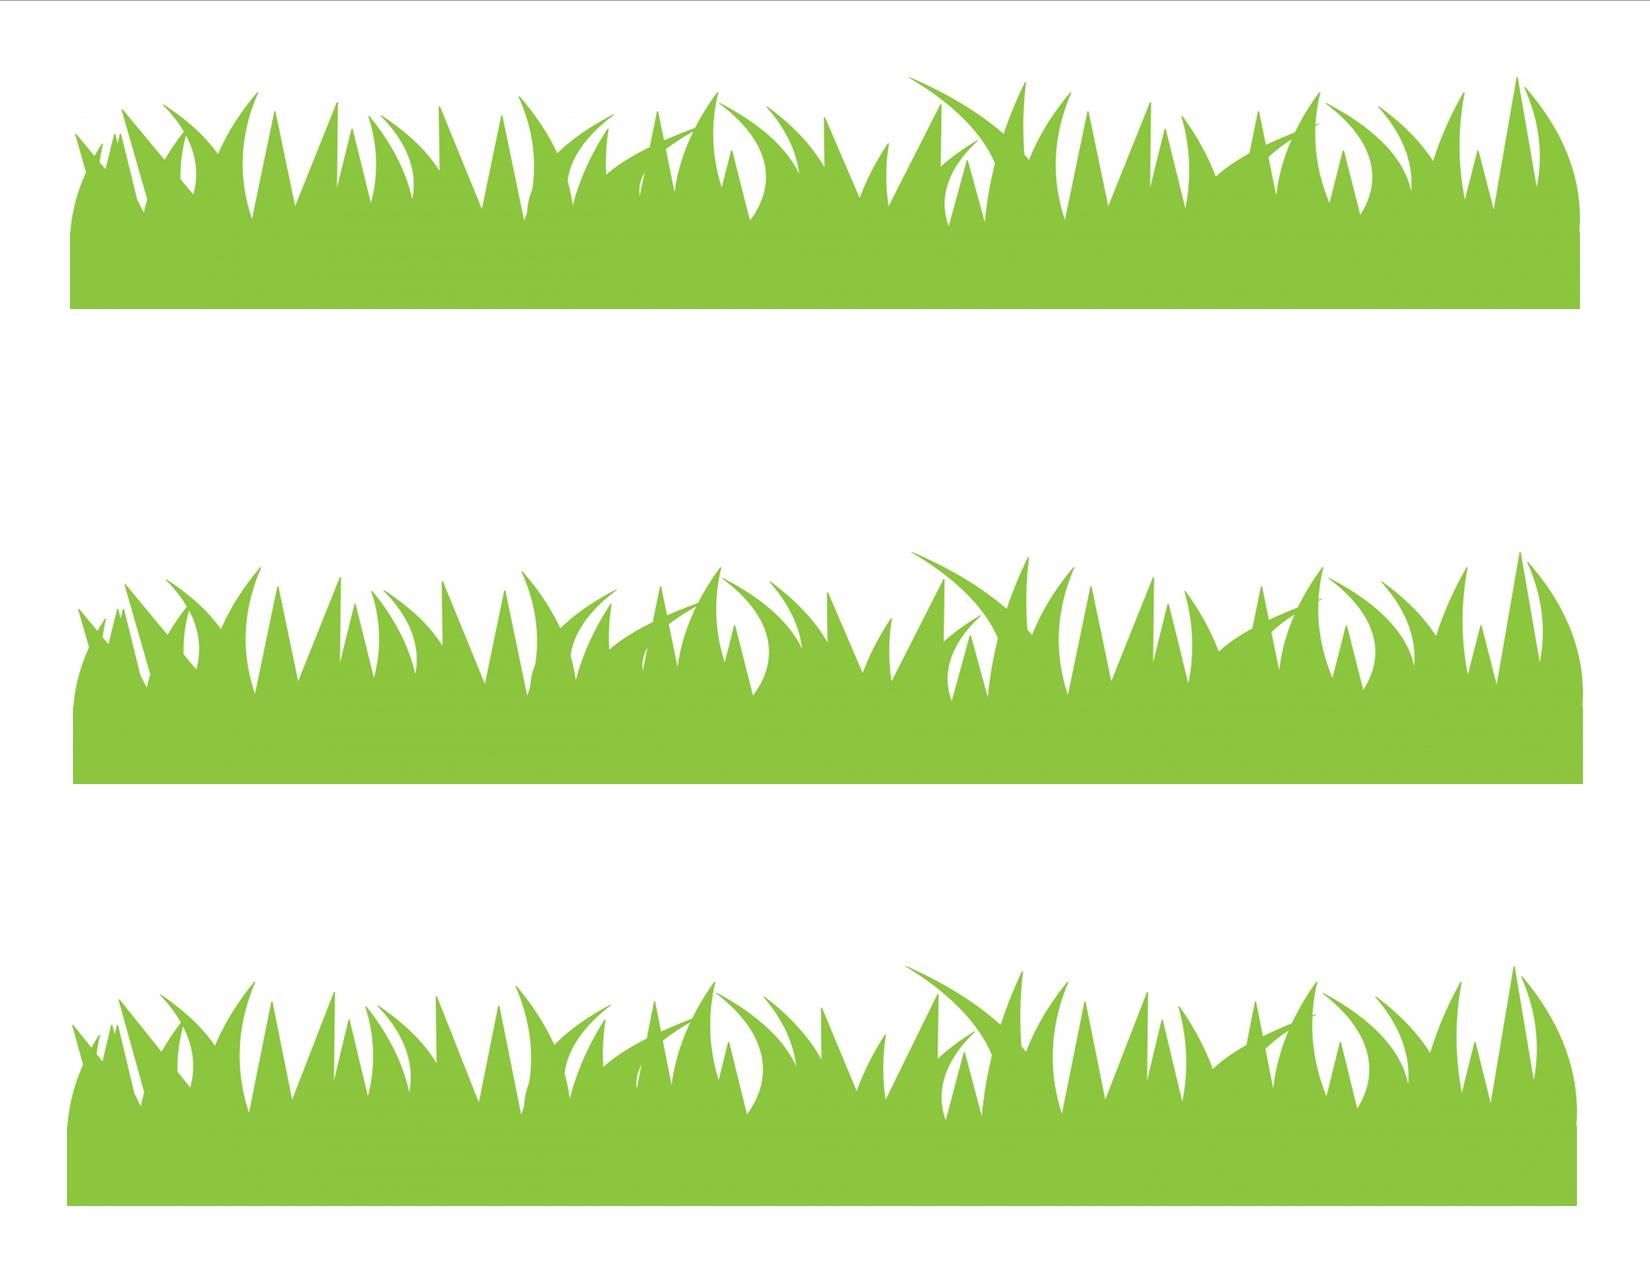 Макет травы: векторные изображения и иллюстрации, которые можно скачать бесплатно | Freepik